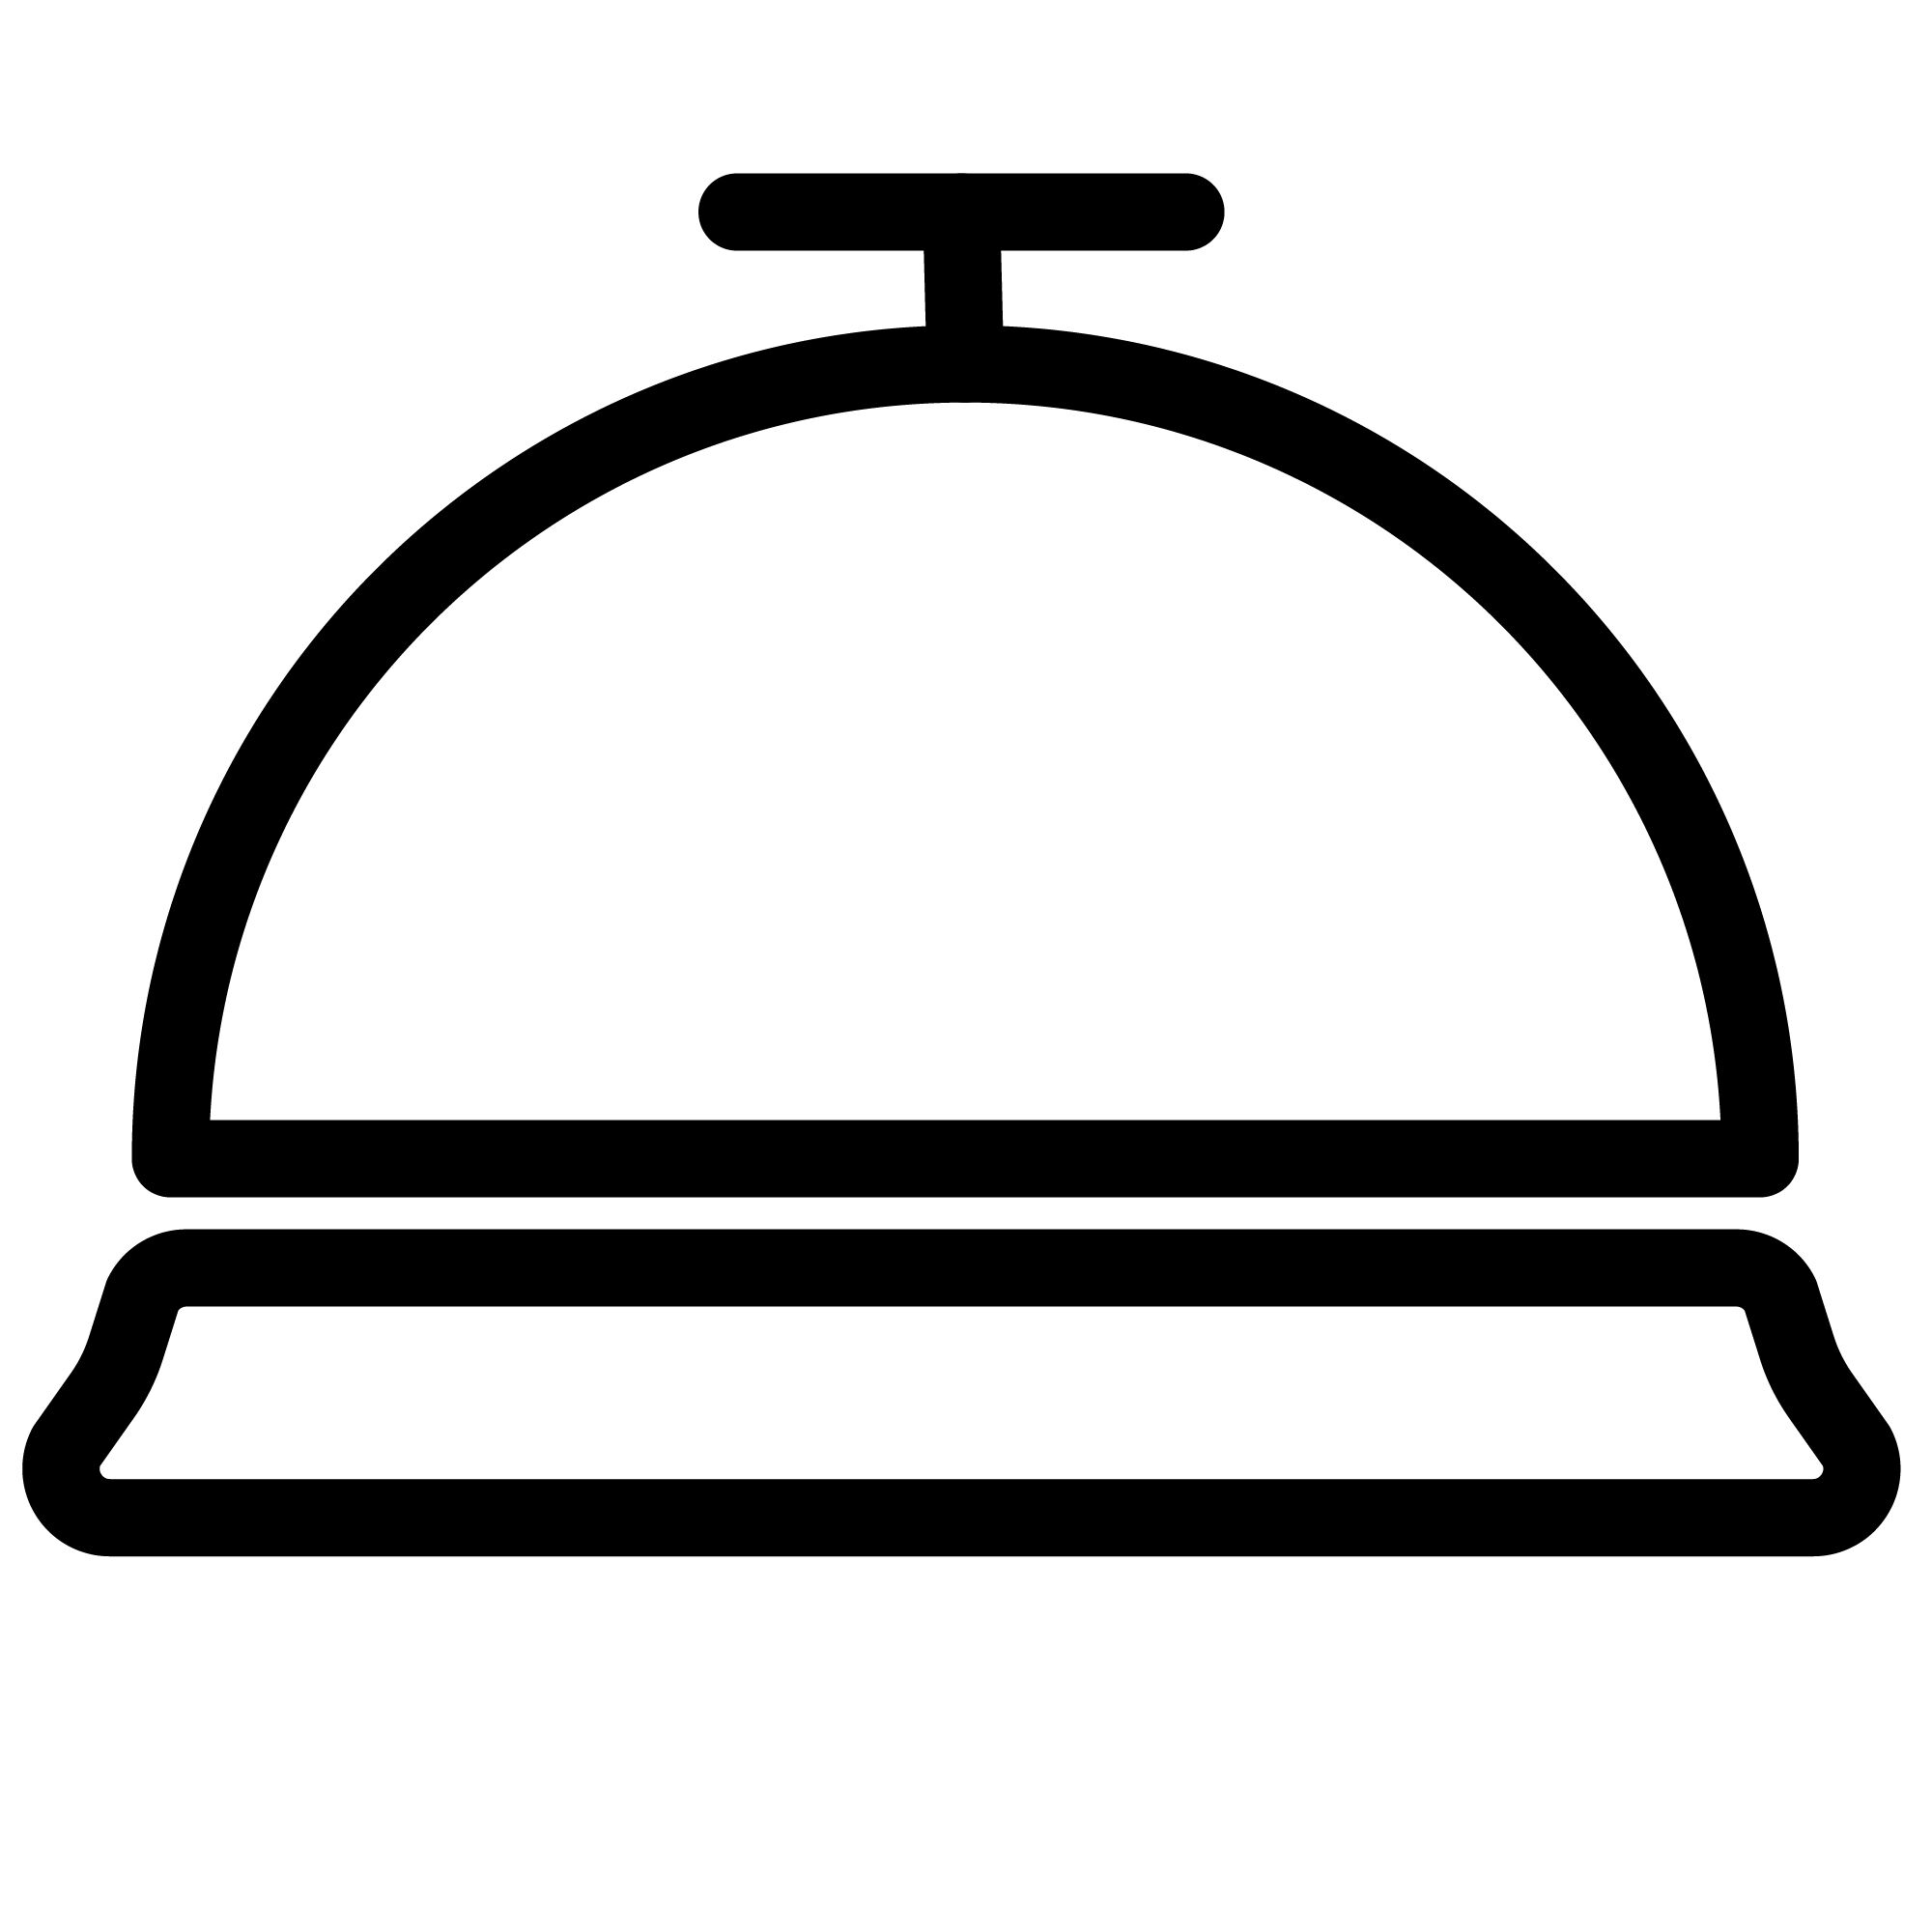 a concierge service icon